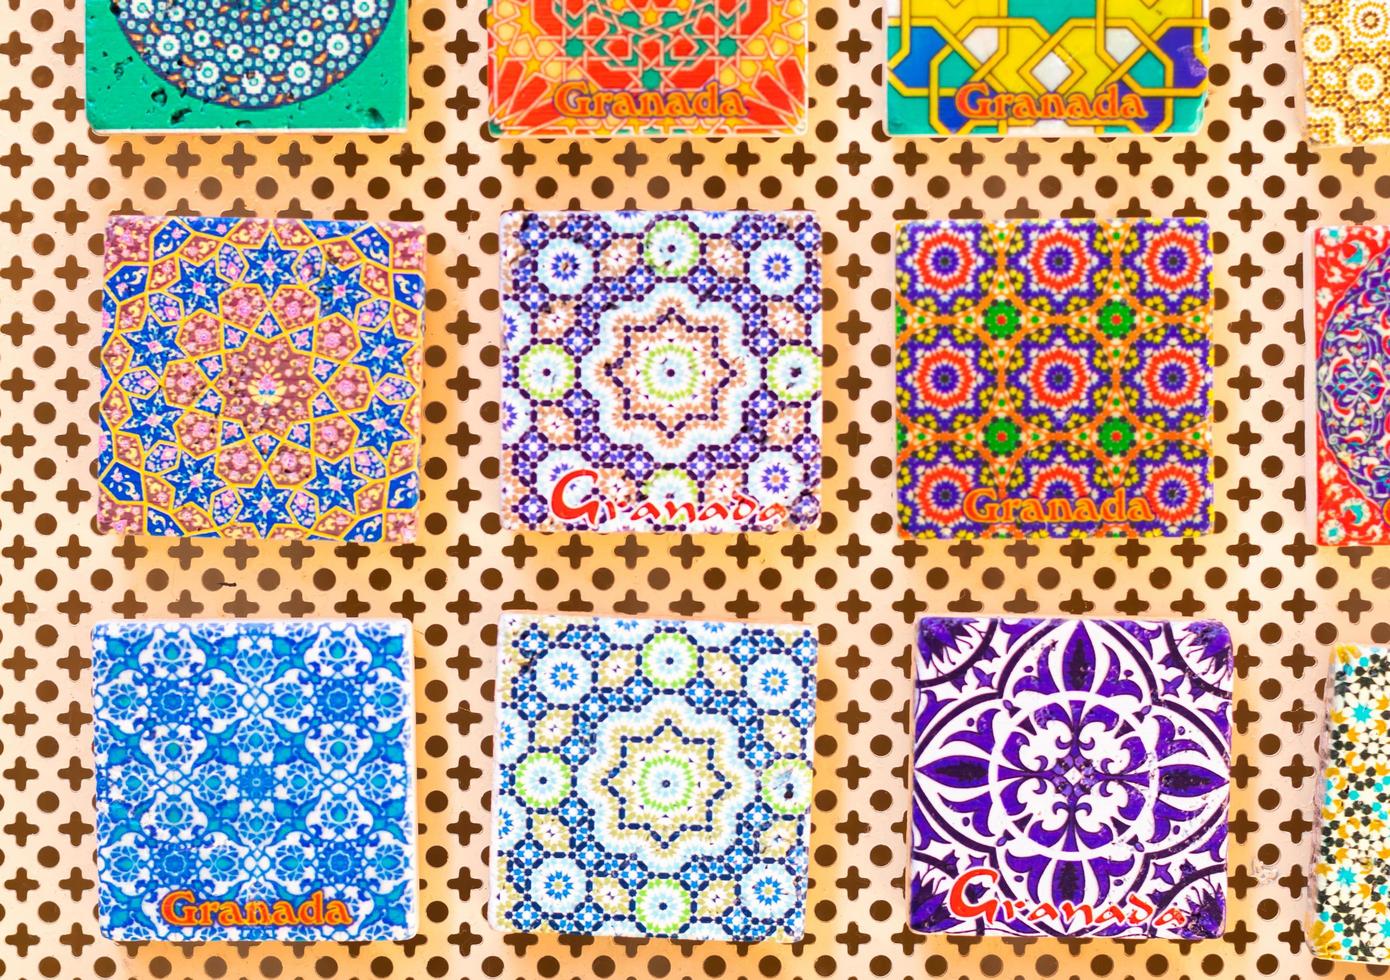 traditionelles Souvenir in Granada, Spanien. Alhambra Dekoration und Mosaik. alter muslimischer Stil foto